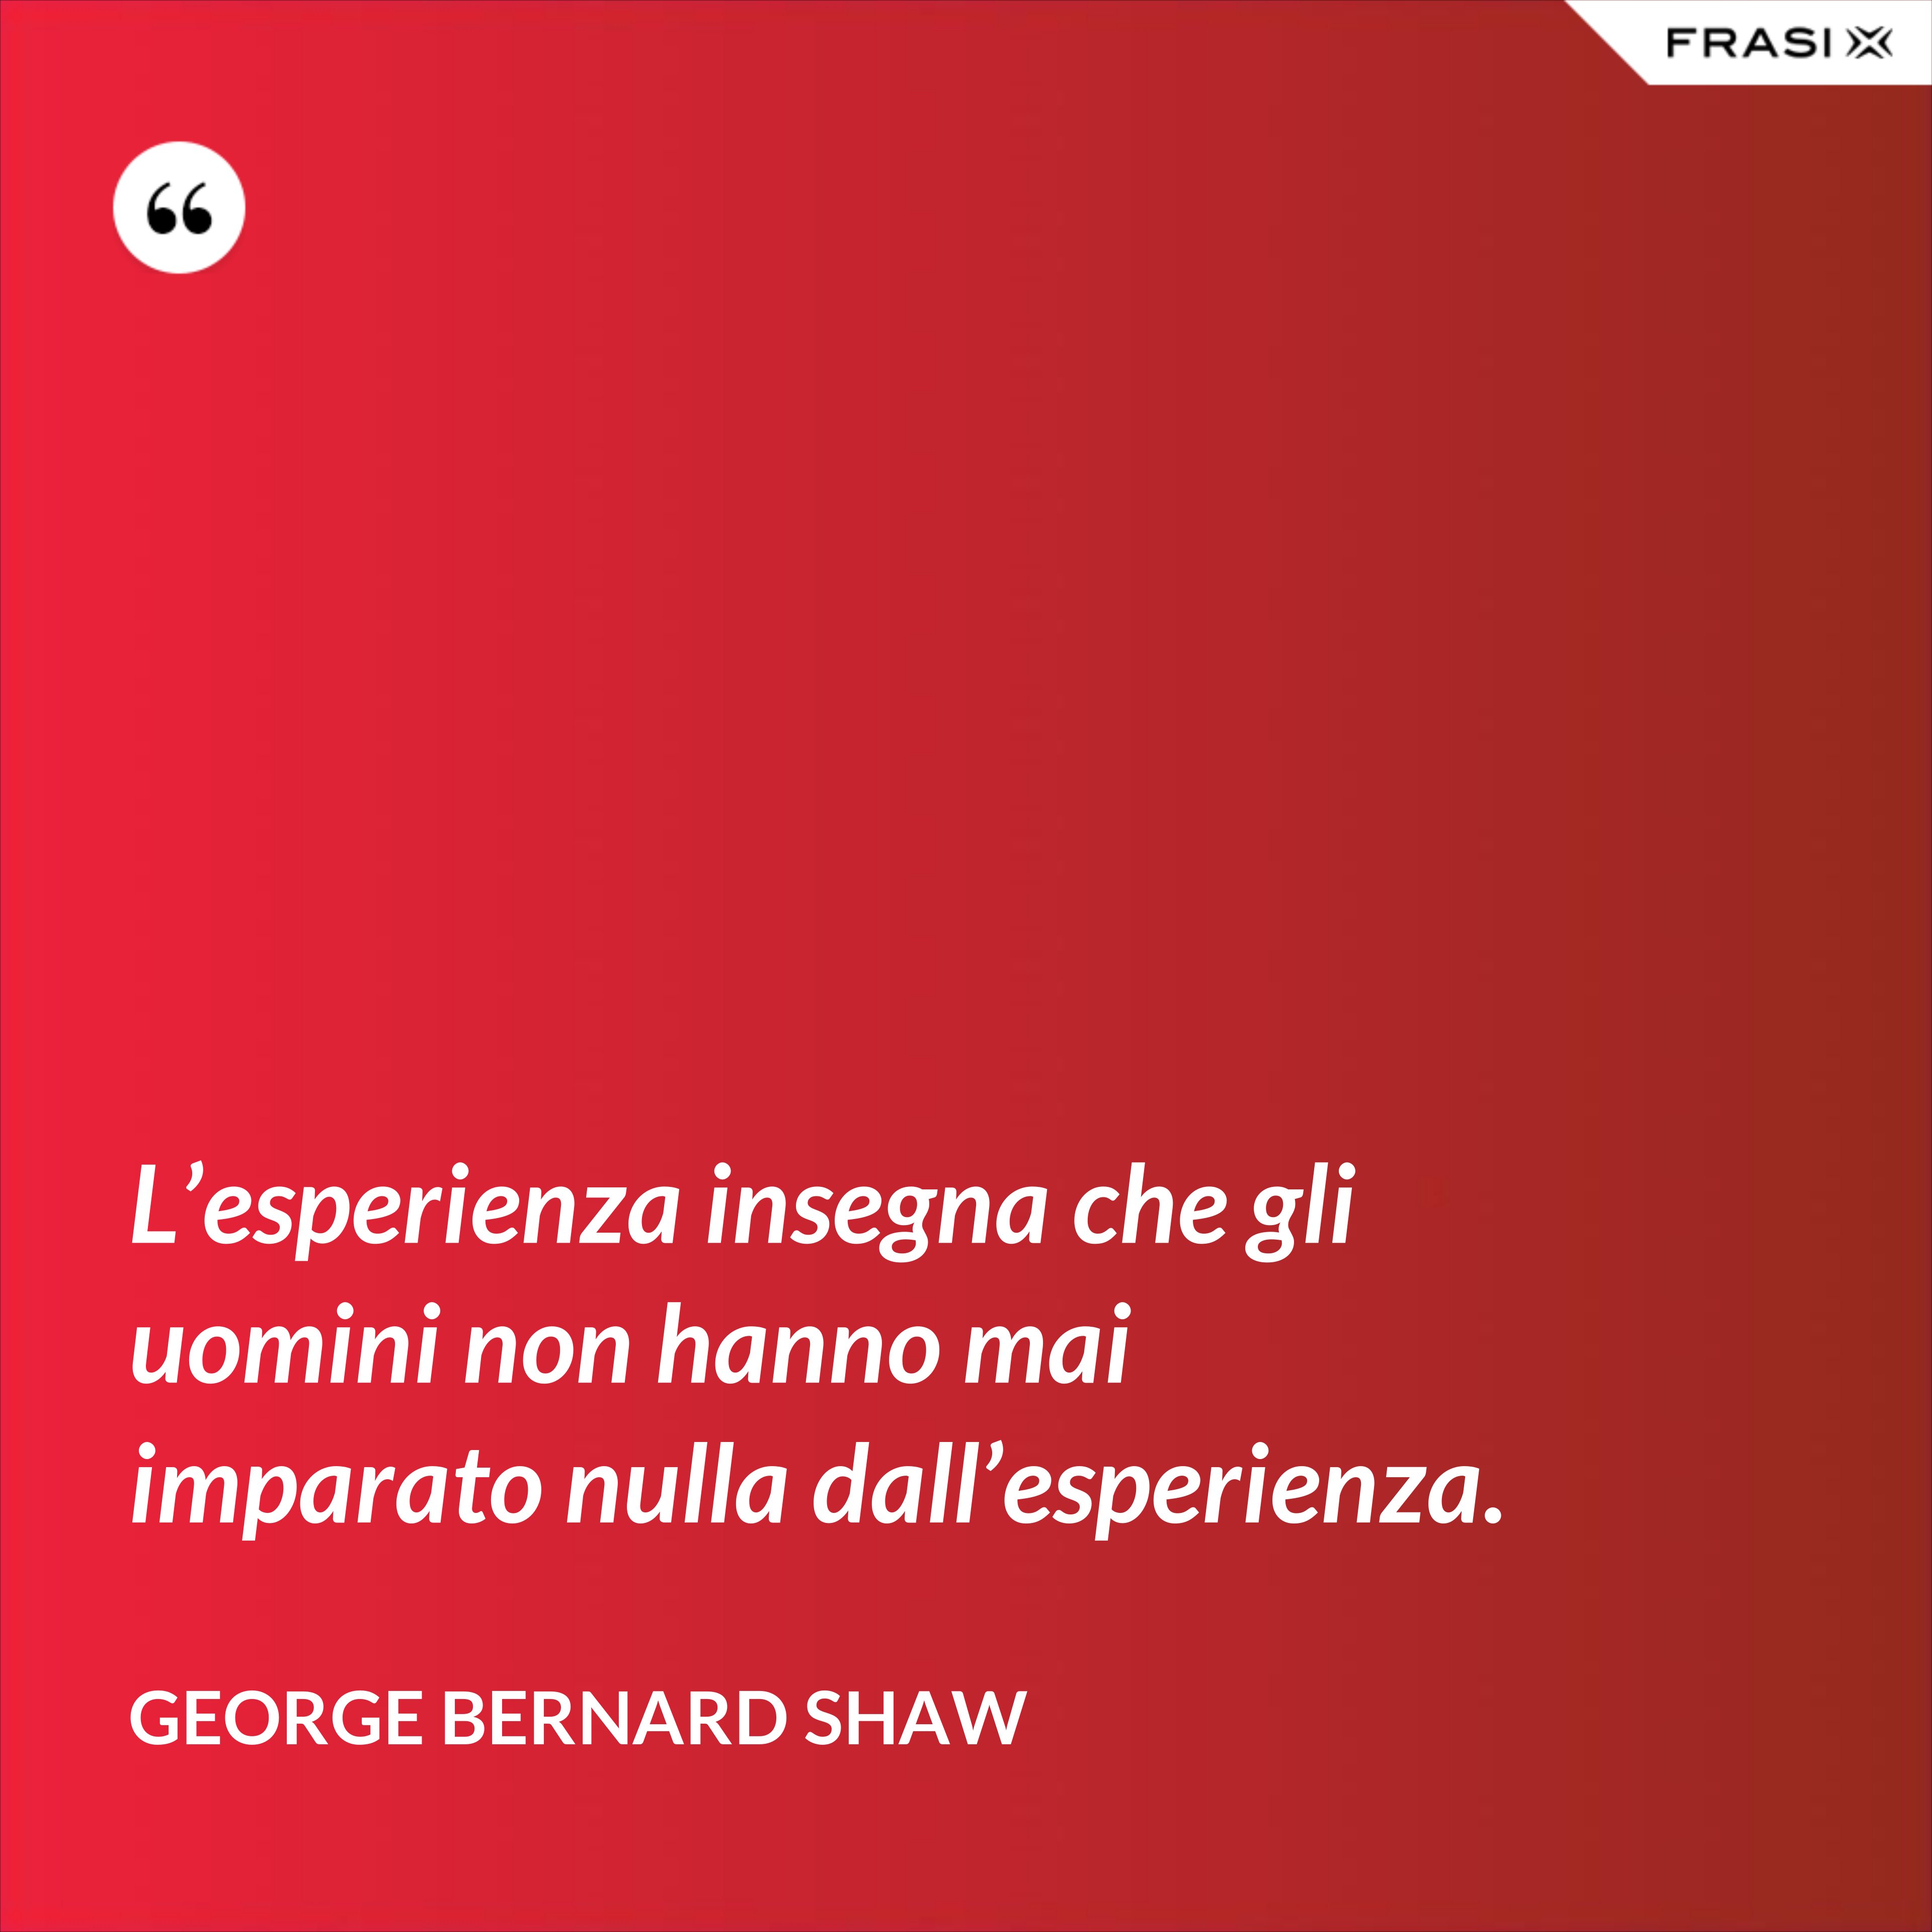 L’esperienza insegna che gli uomini non hanno mai imparato nulla dall’esperienza. - George Bernard Shaw